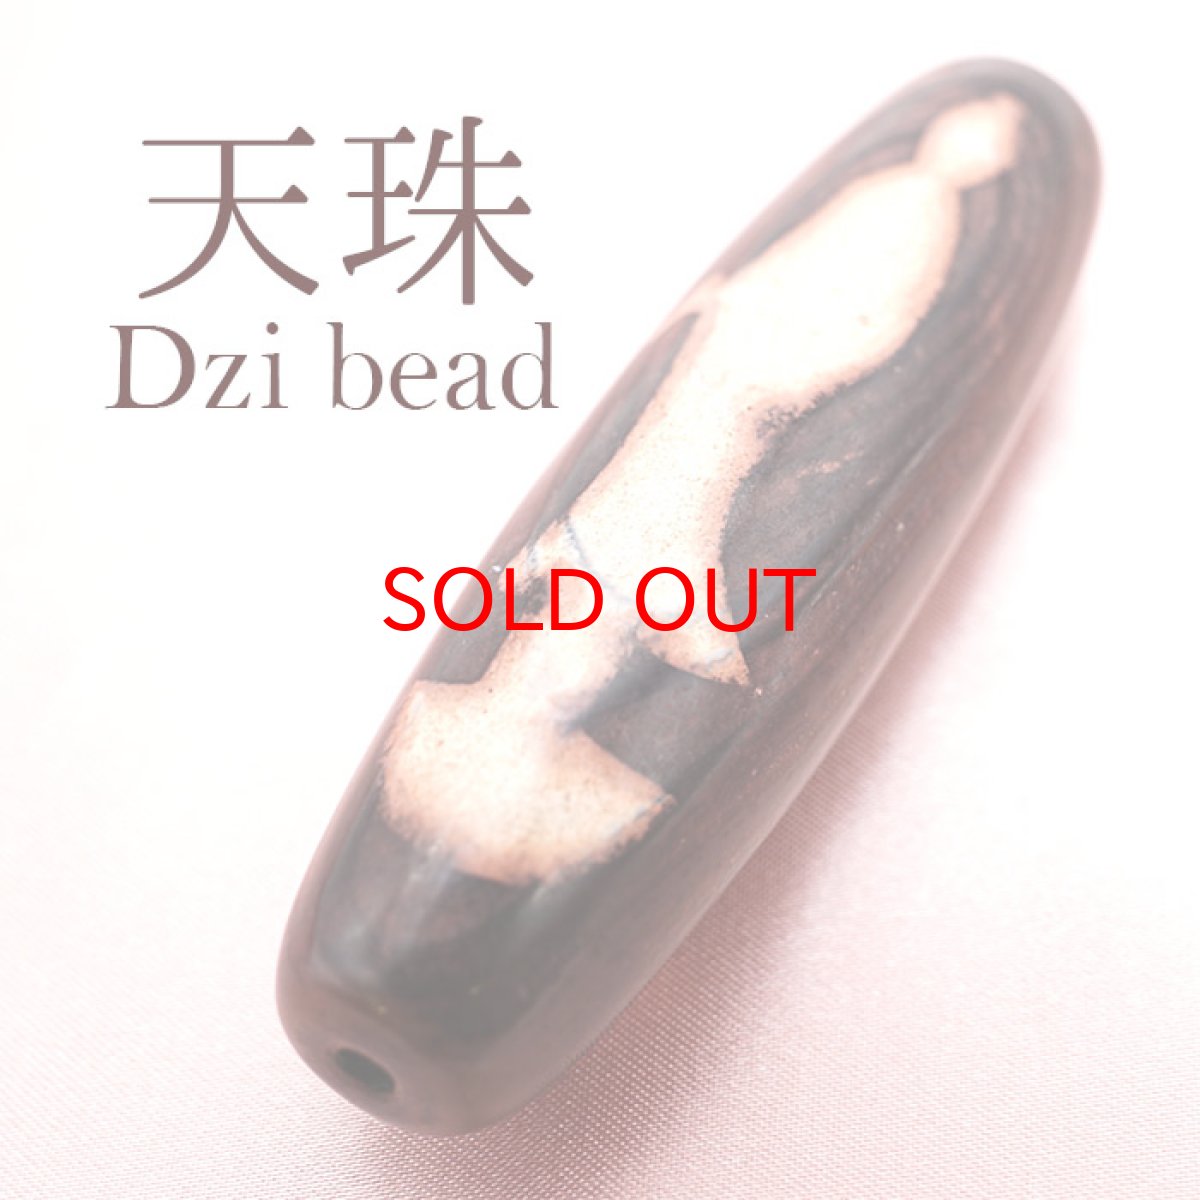 画像1: 【一粒売り】 観音天珠 ジービーズ 約70mm チベット 瑪瑙 めのう メノウ 天然石 パワーストーン Dzi bead (1)